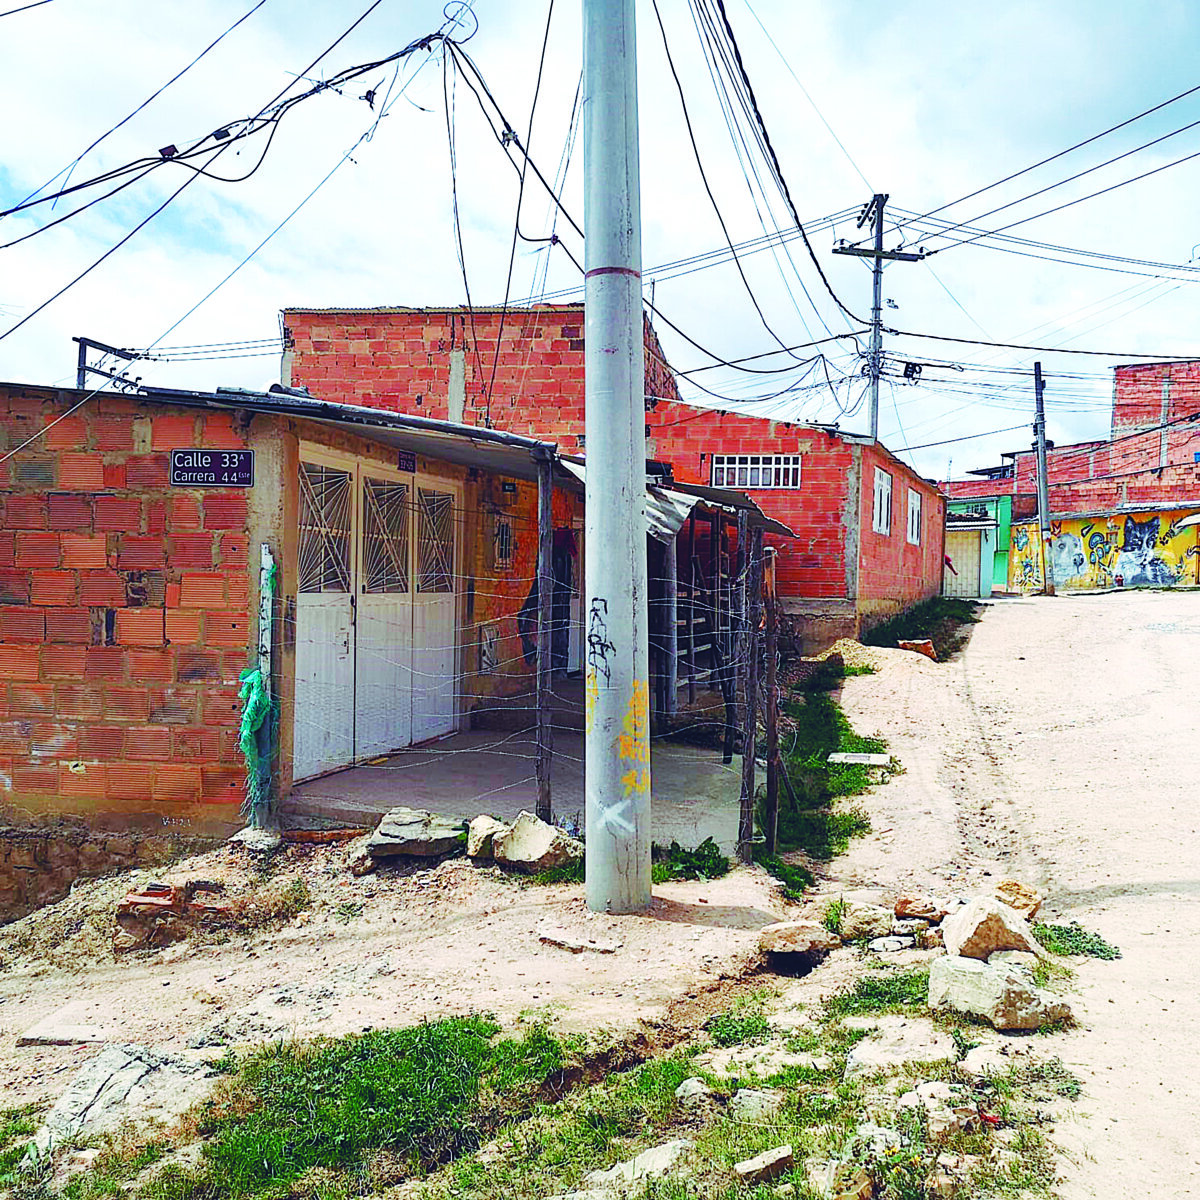 Sigue racha de crímenes en Soacha: joven de 25 años fue baleado en Villa Nueva La situación en Soacha sigue de mal en peor en materia de seguridad, puesto que en los primeros 12 días de julio ya se presentaron 9 muertes violentas. La última ocurrió en el barrio Villa Nueva.